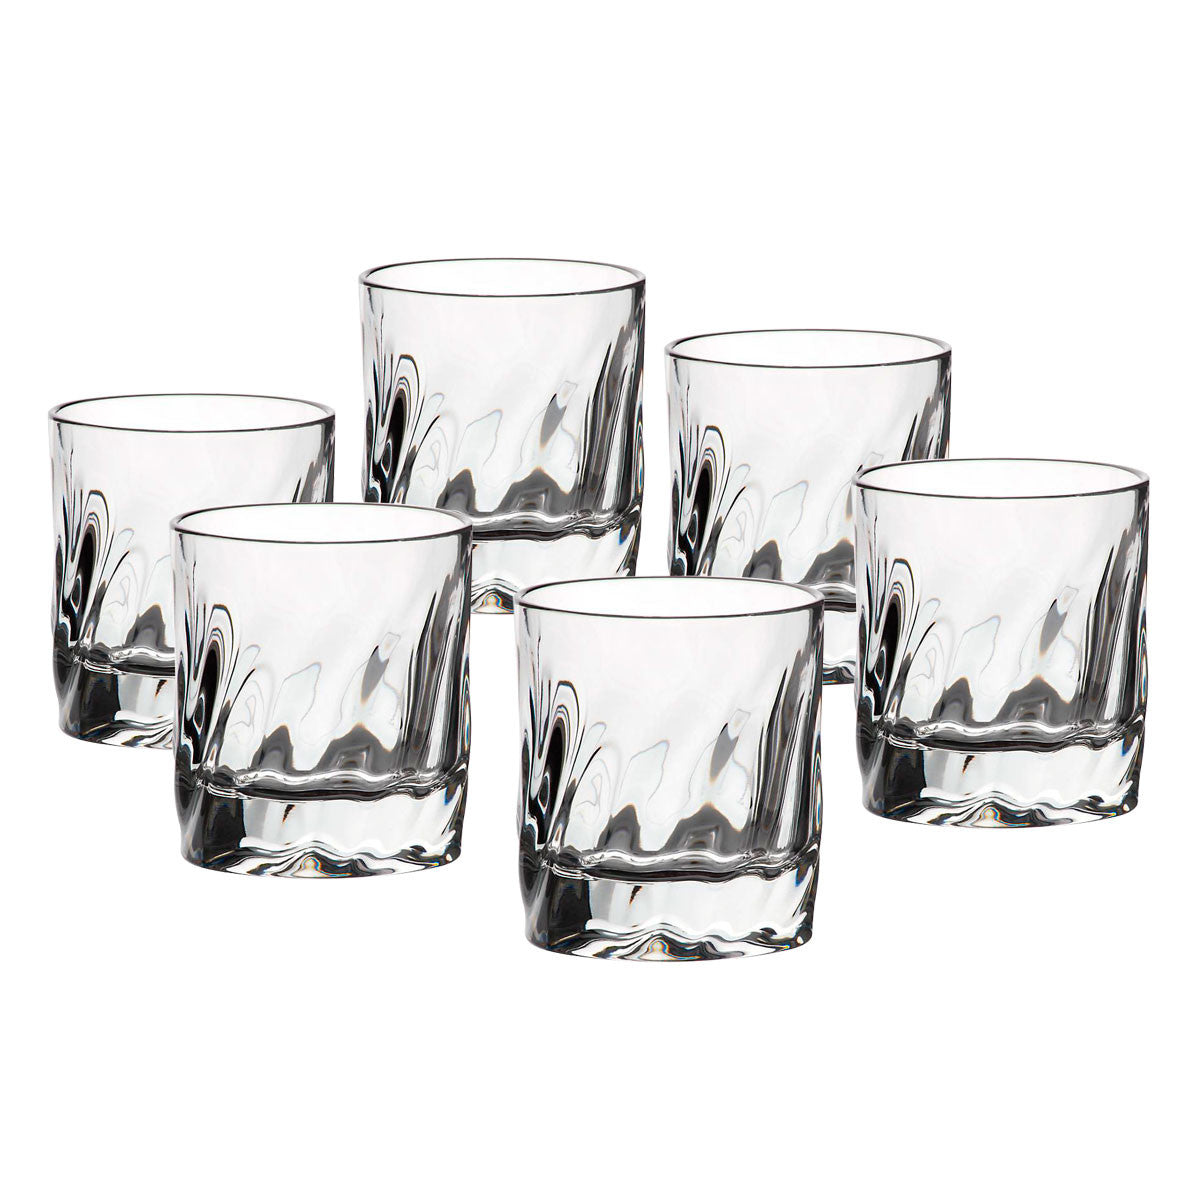 Whiskyglas Katarina Silver 300ml 6er-Set